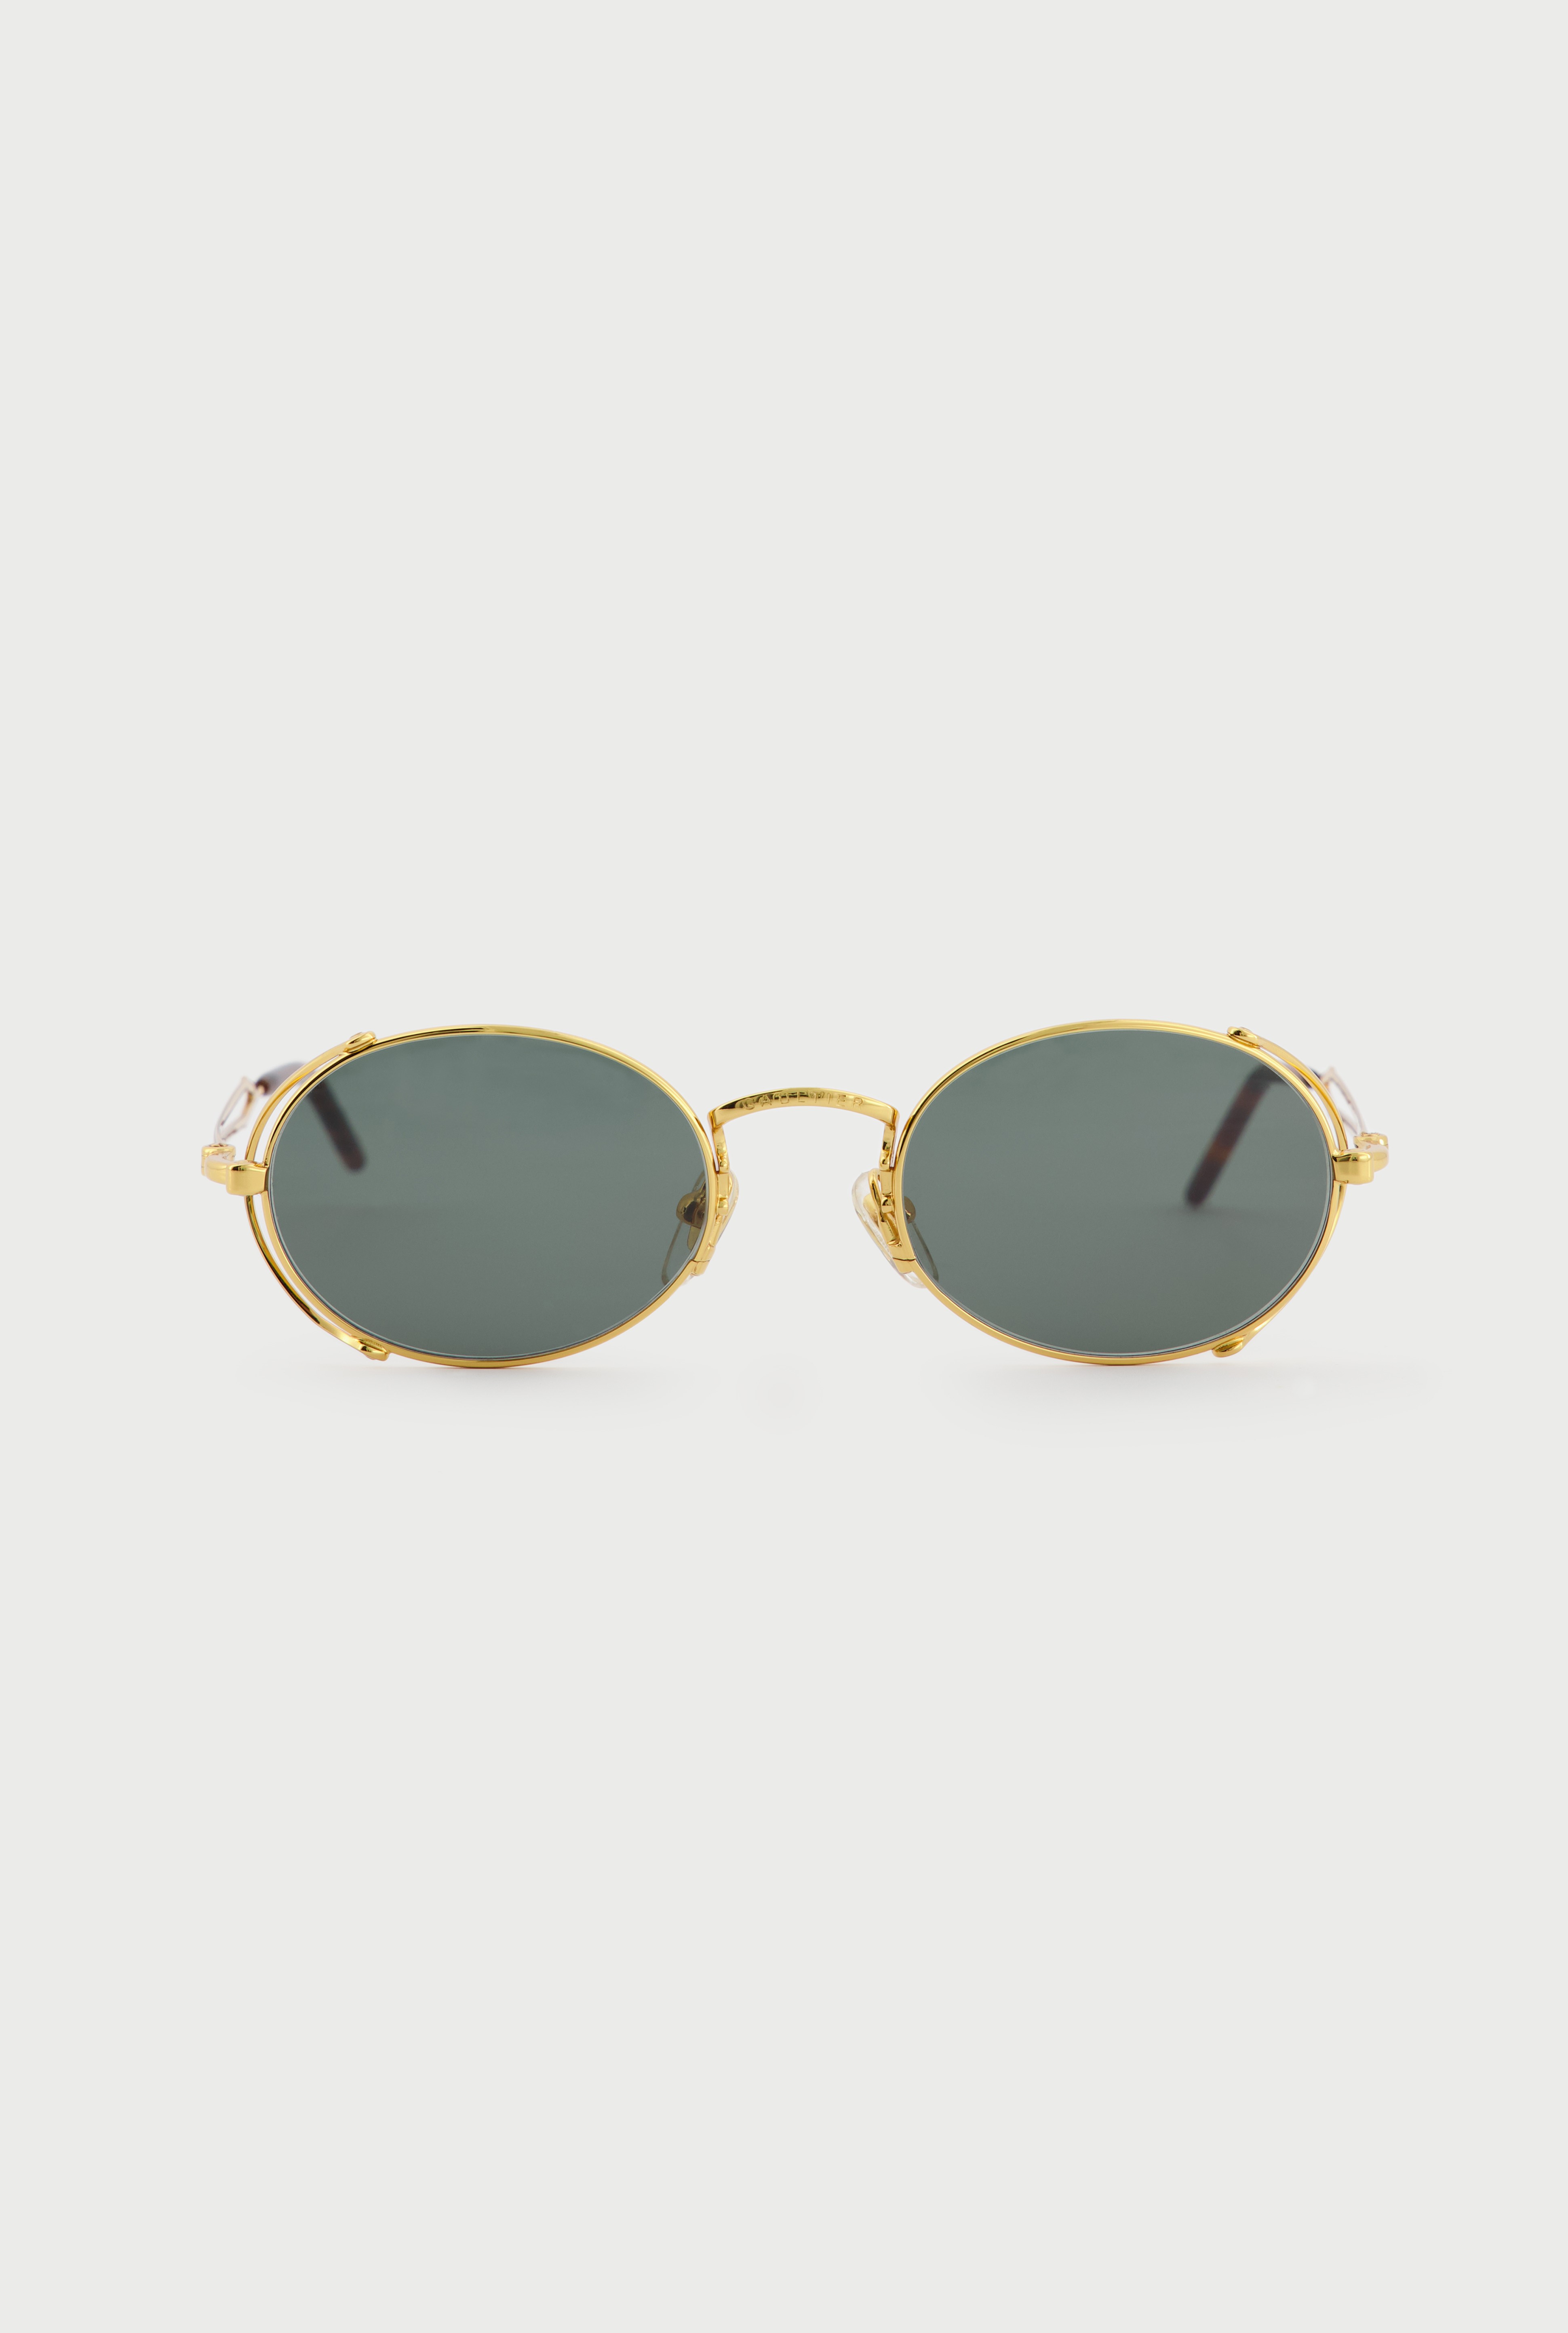 Jean Paul Gaultier - Jean Paul Gaultier | The 55-3175 Sunglasses